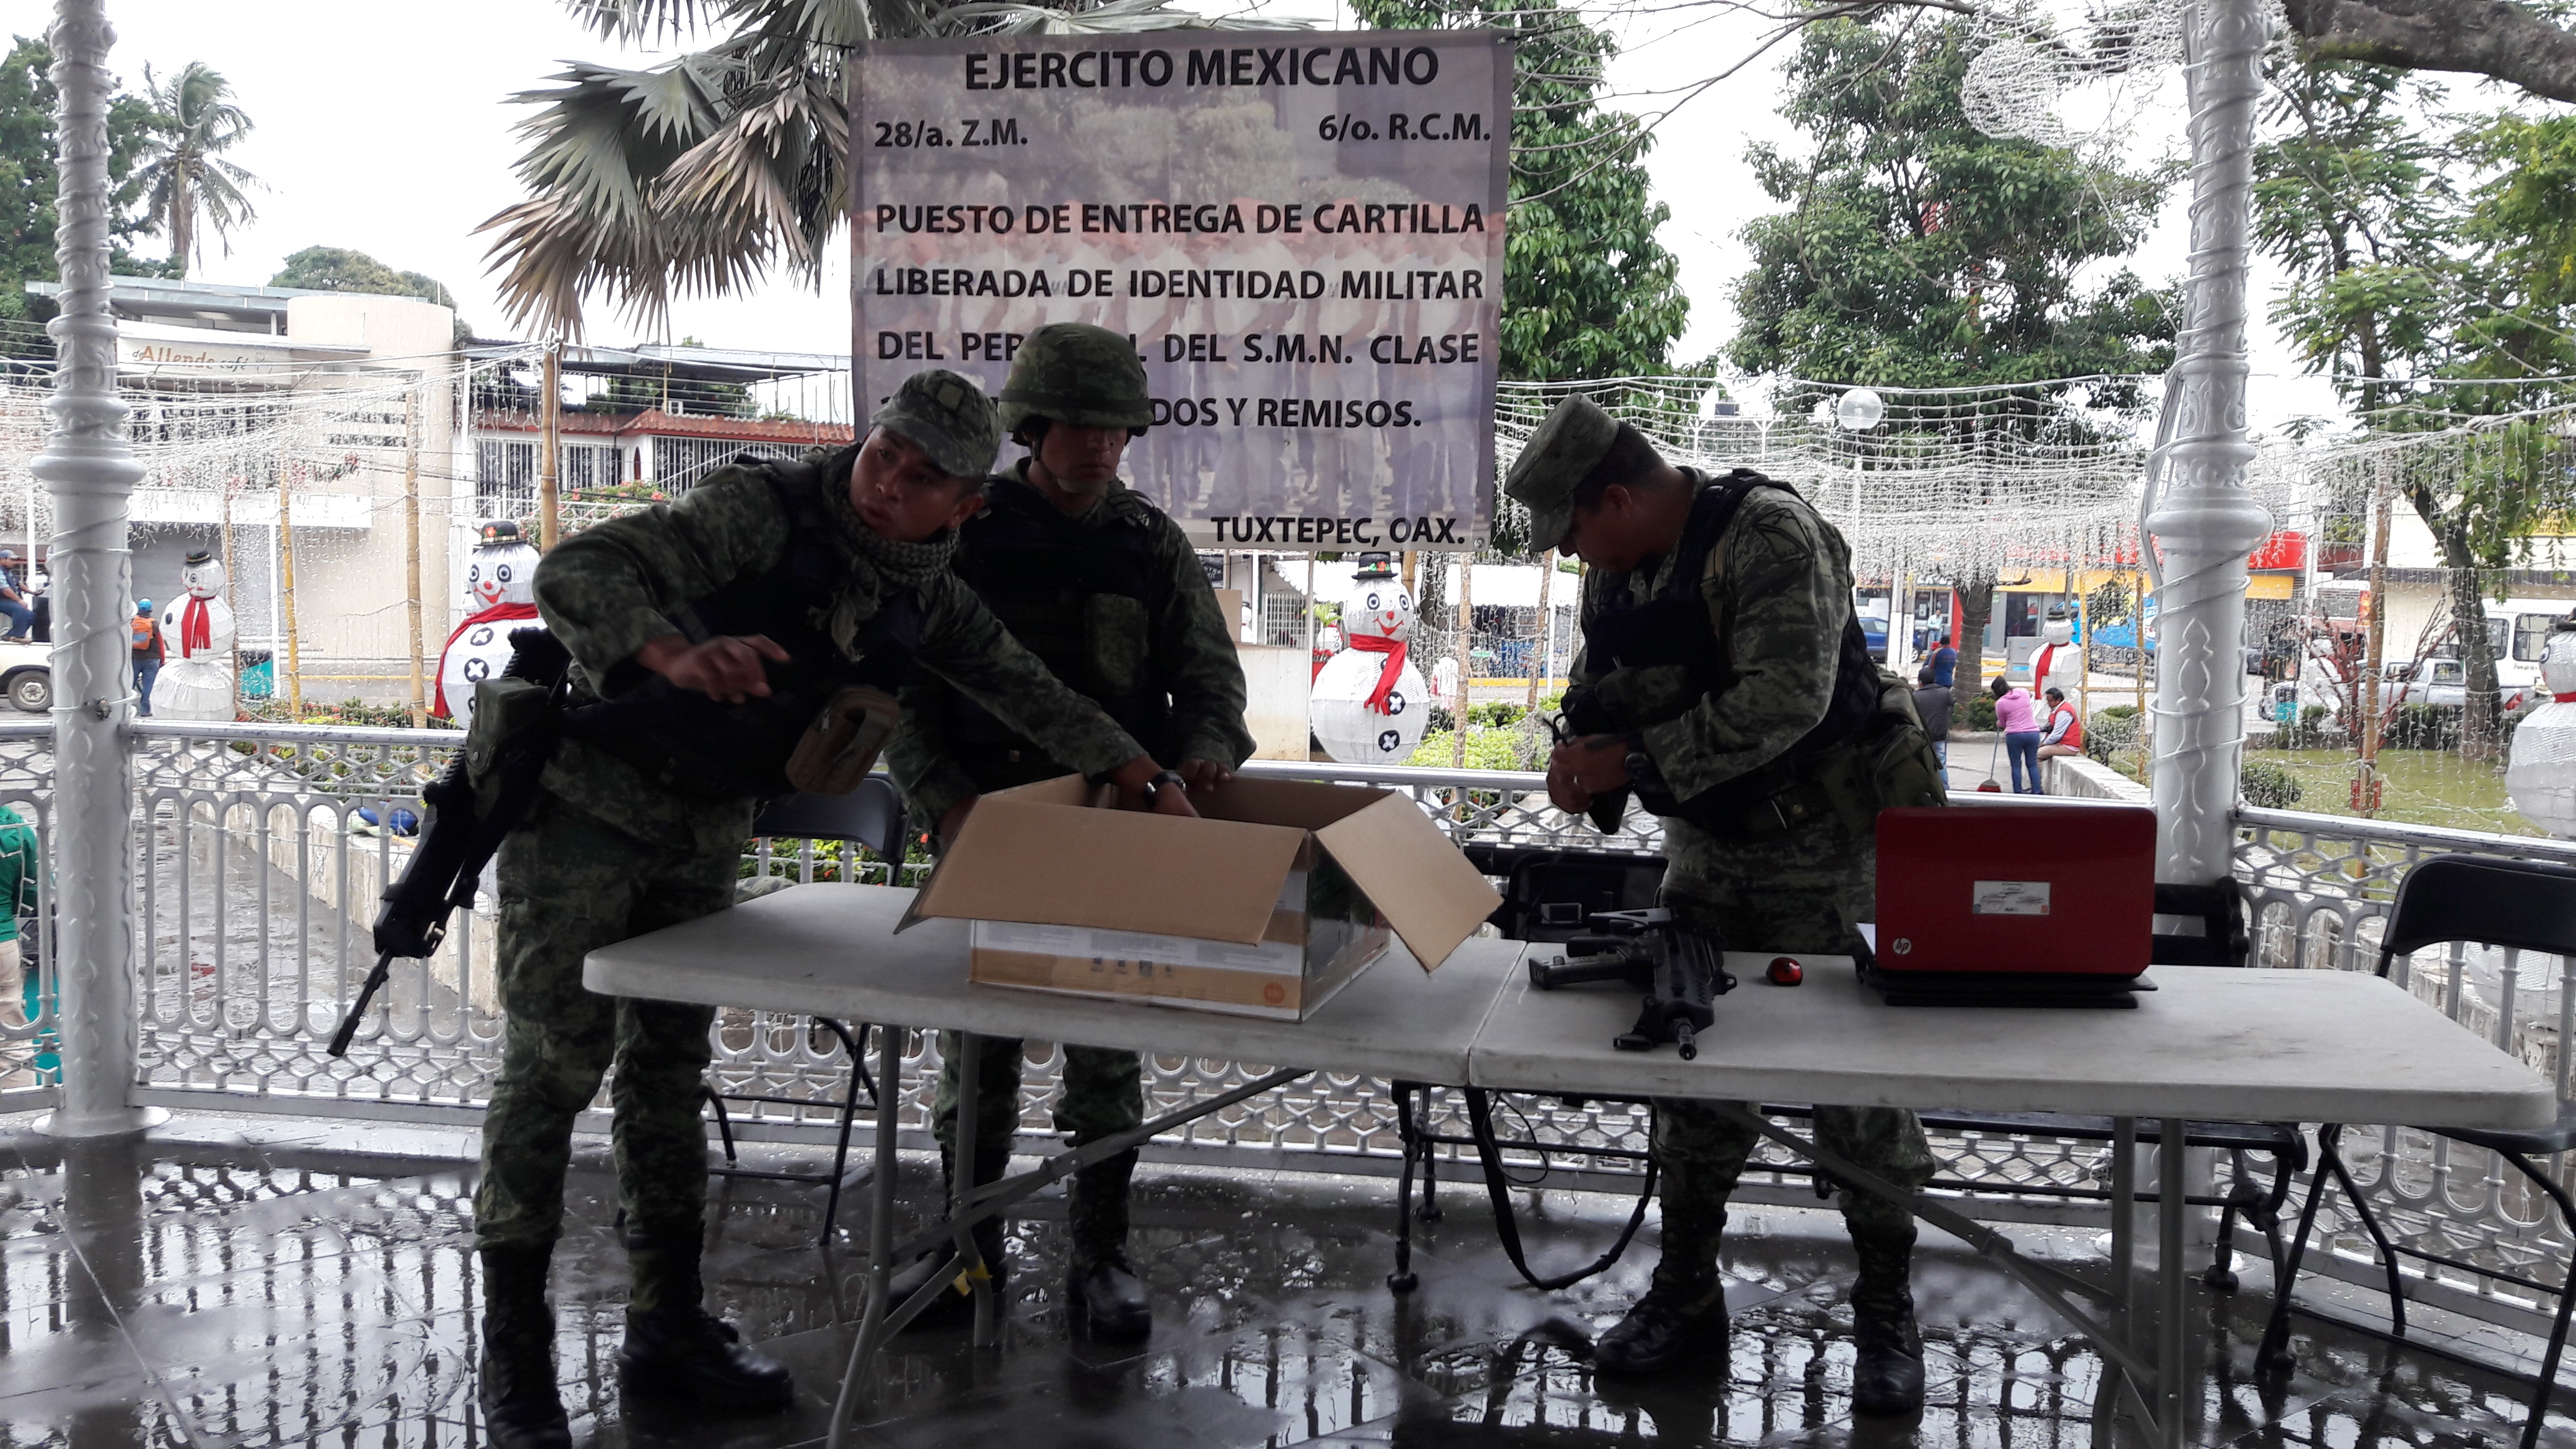 Ejército entrega cartillas de Servicio Militar liberadas en Tuxtepec. Noticias en tiempo real